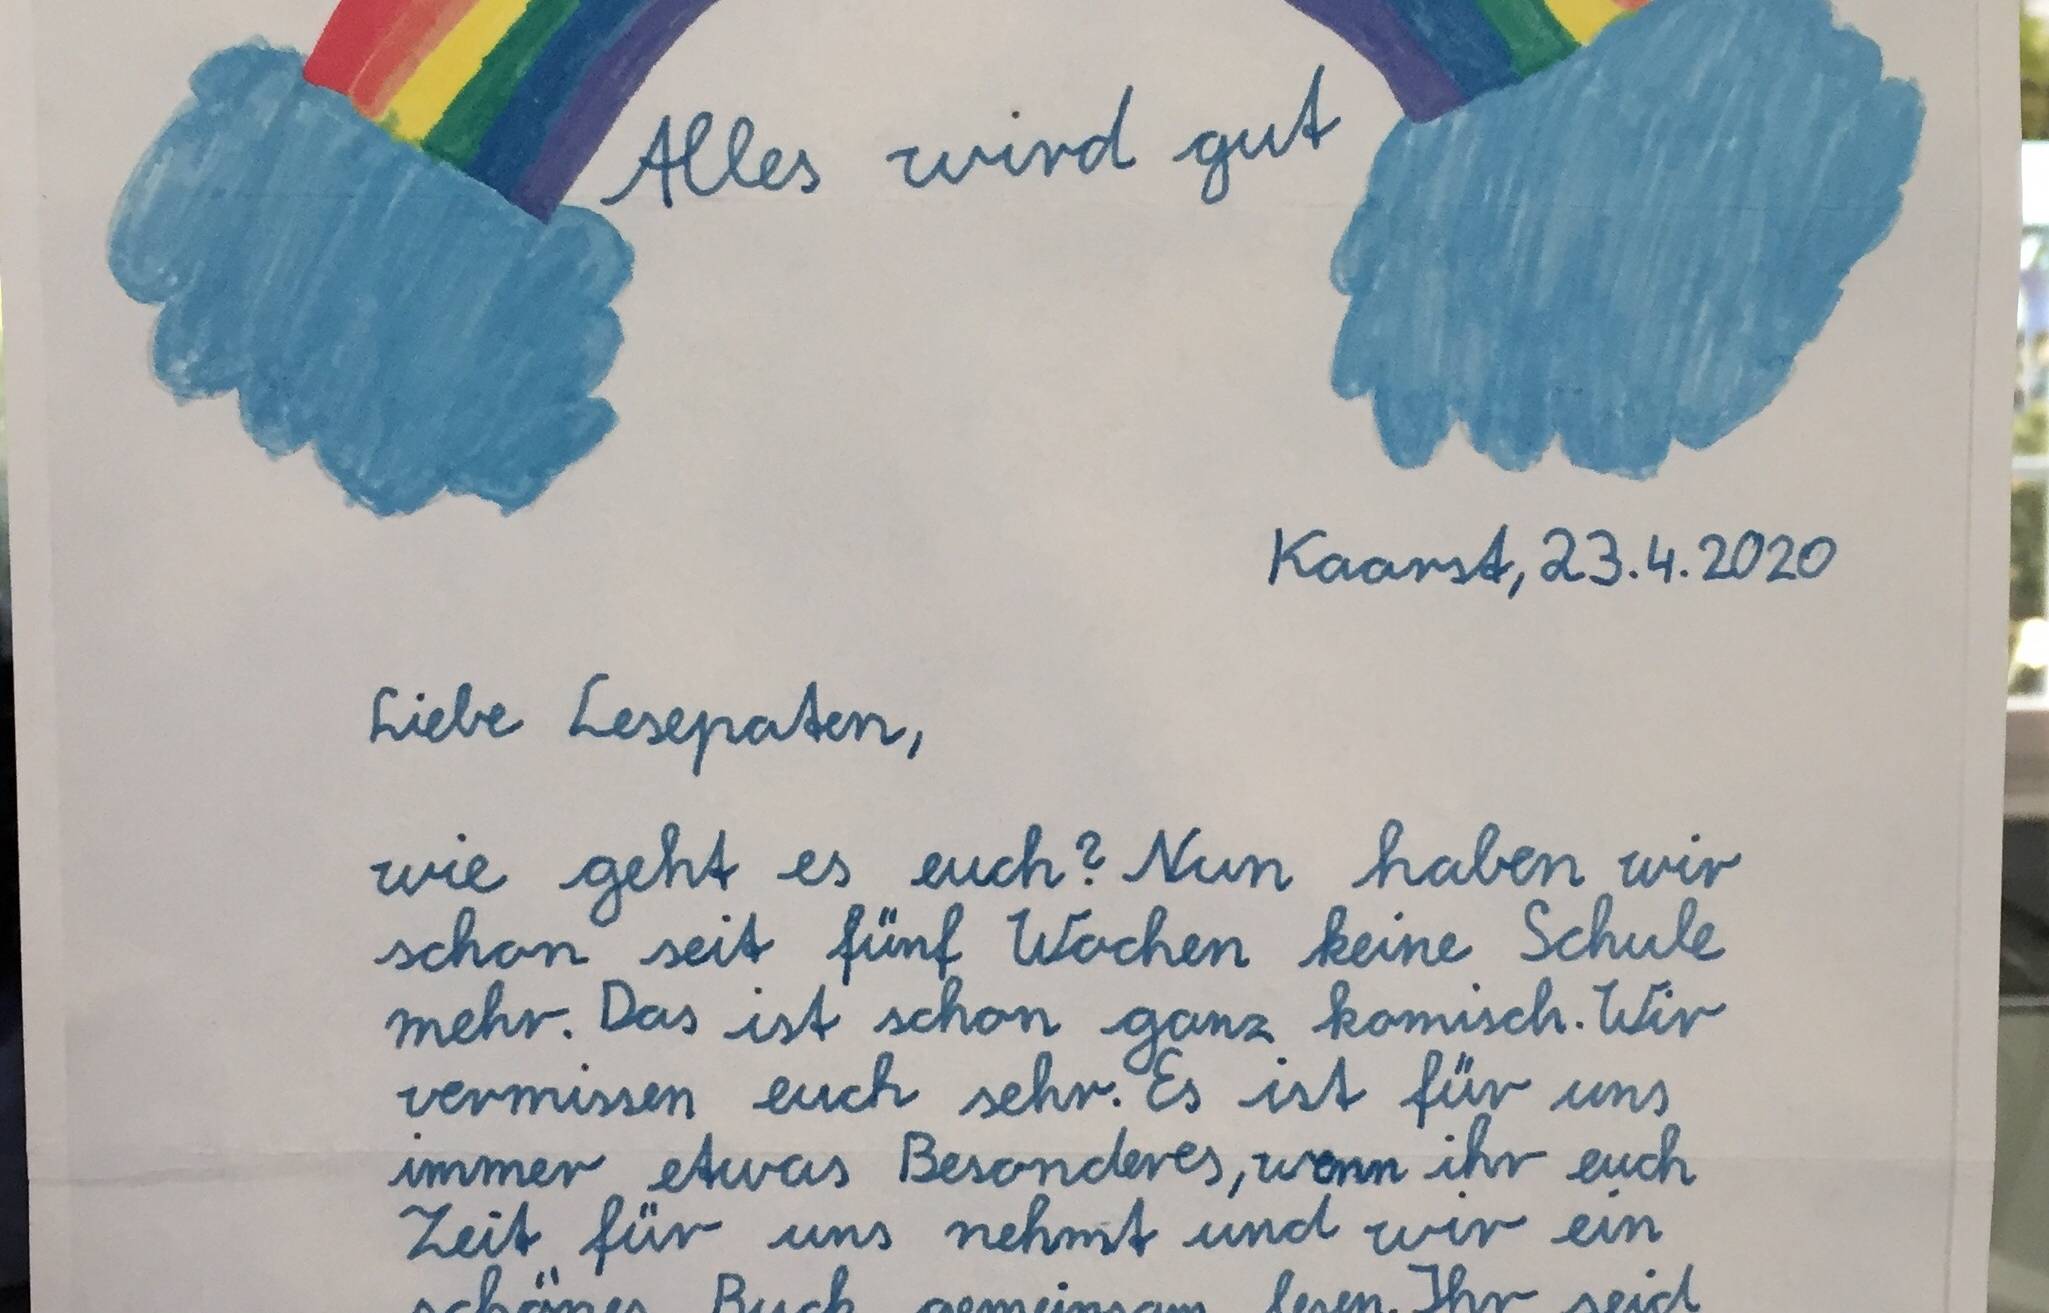  „Alles wird gut!“ Diesen herzlichen Brief schickten Lesekinder der Astrid-Lindgren-Grundschule an ihre Lesepartner.Foto: Kaarster Lesepartner. 